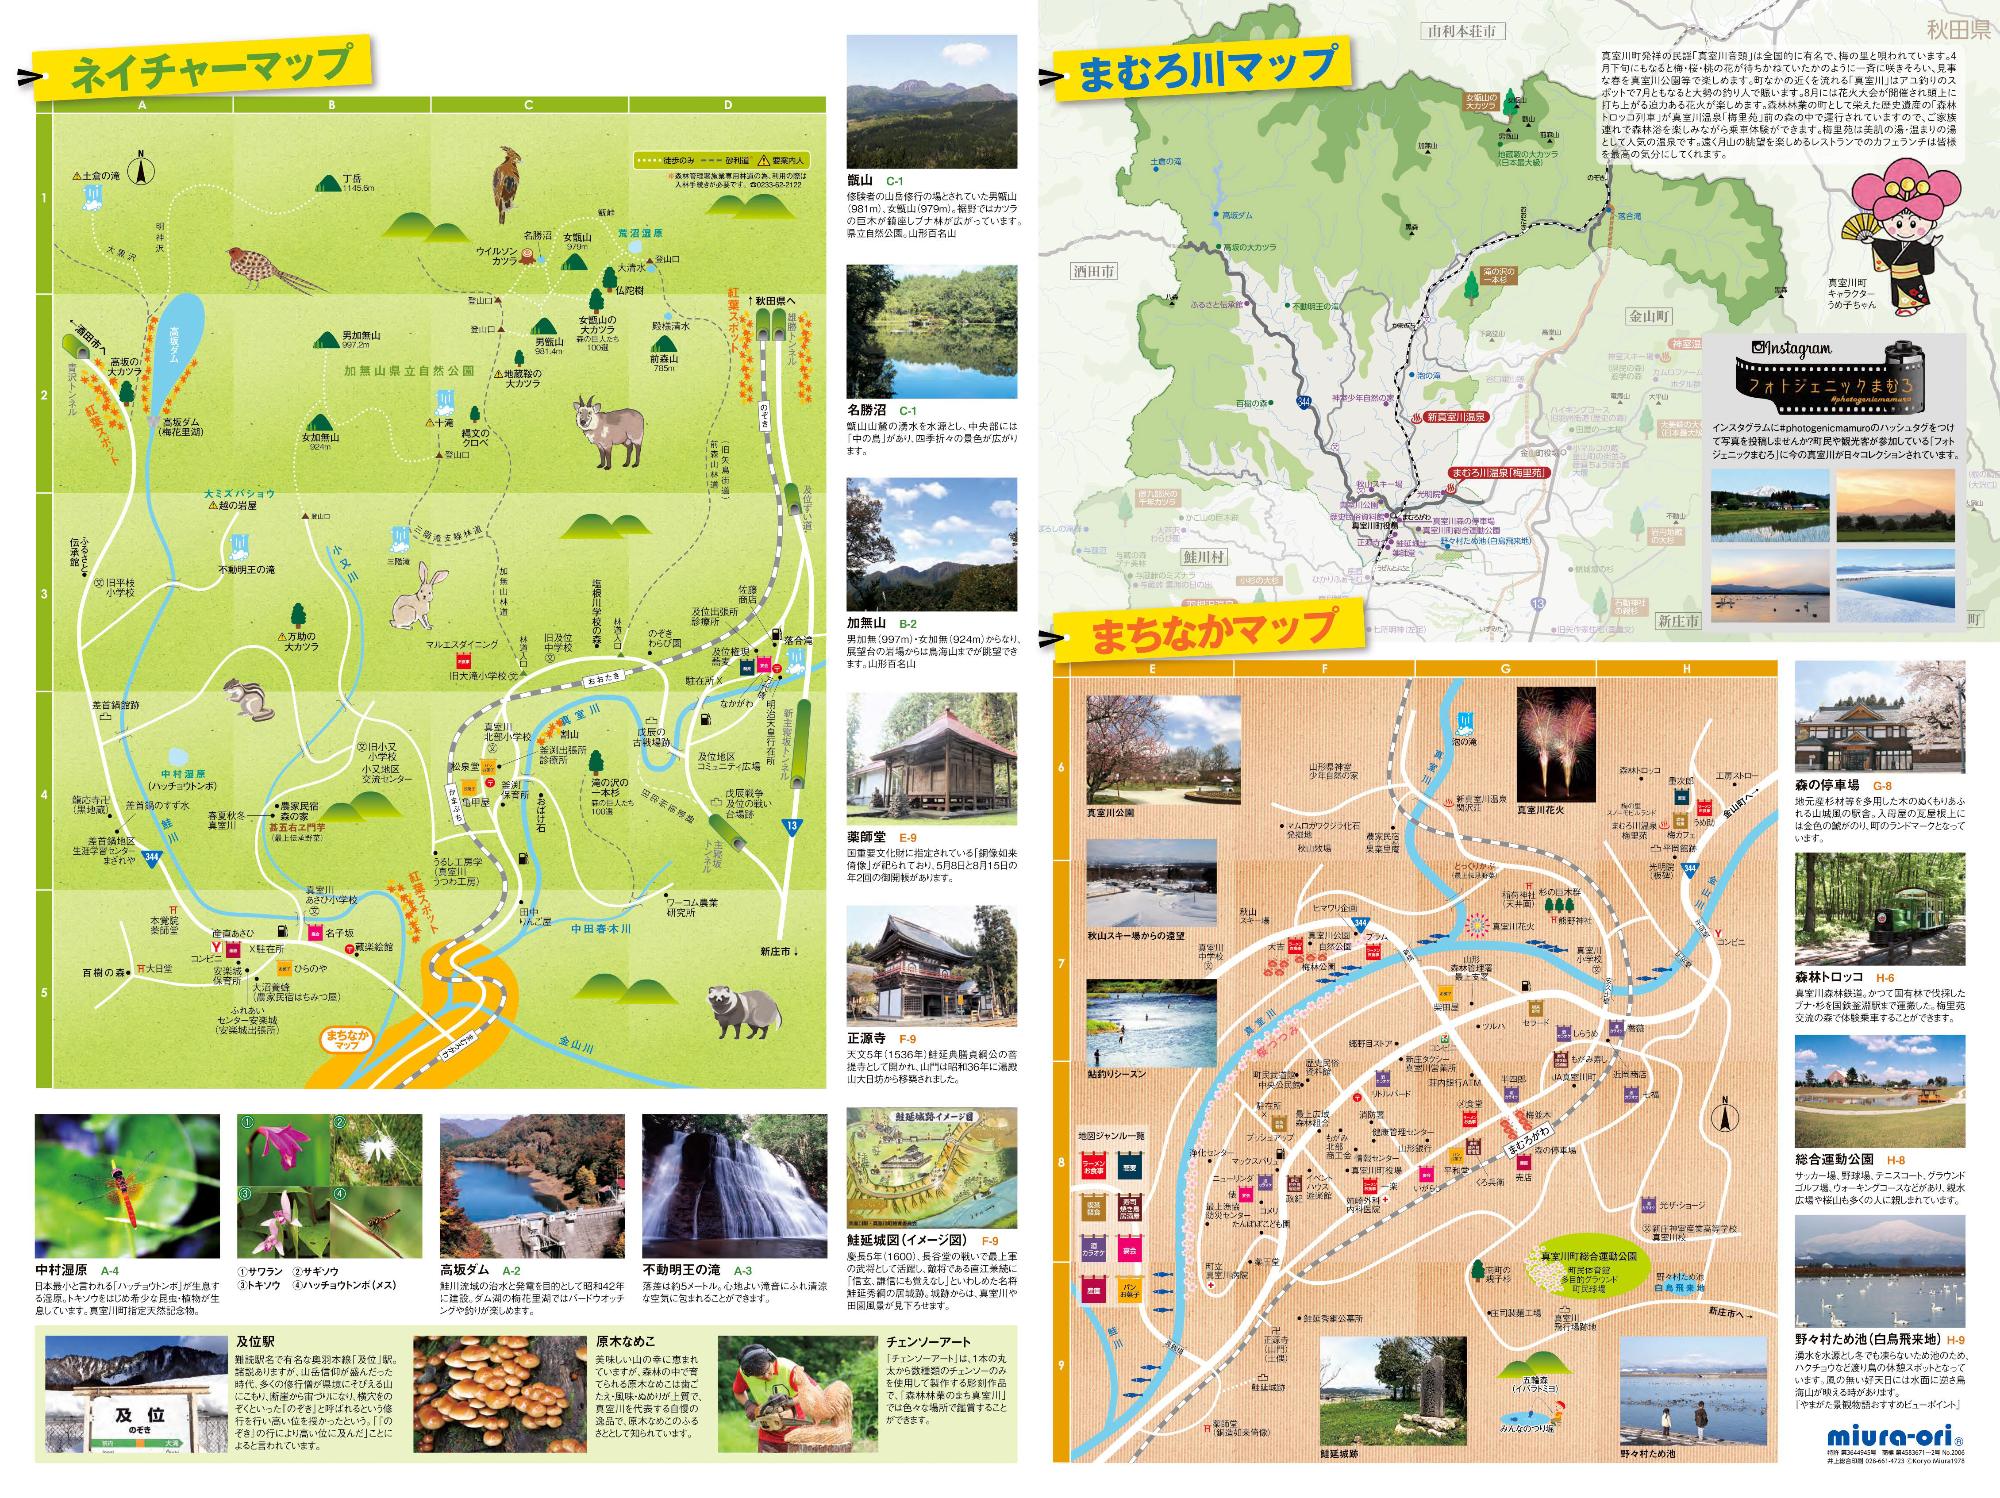 見どころのマップが載っている真室川町観光パンフレットの表面 詳細は以下